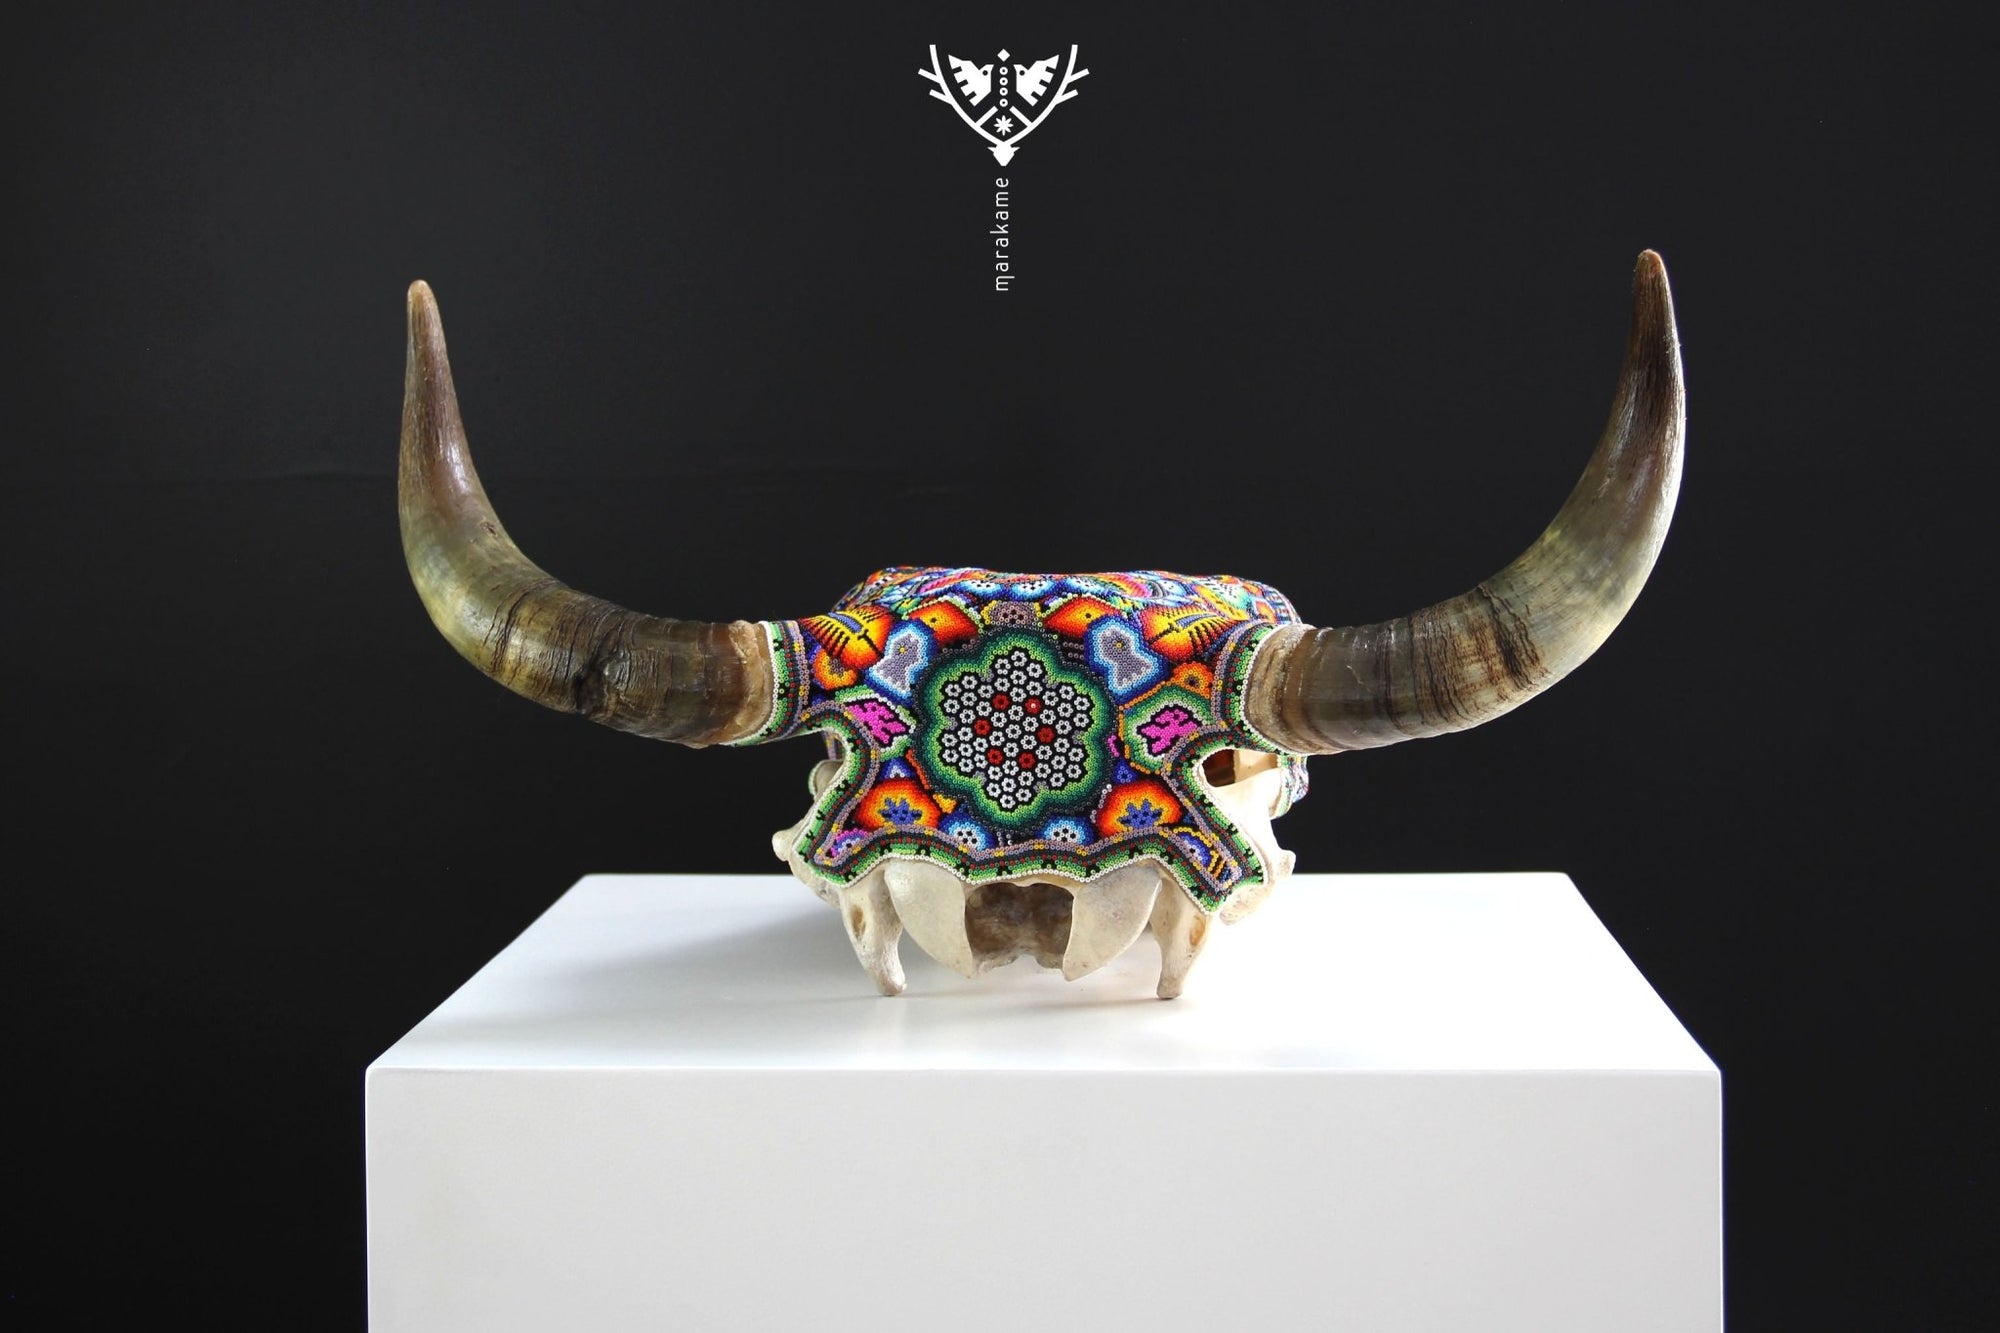 牛の頭蓋骨ウイチョルアート - Xurawe wexik+a - ウイチョルアート - マラカメ